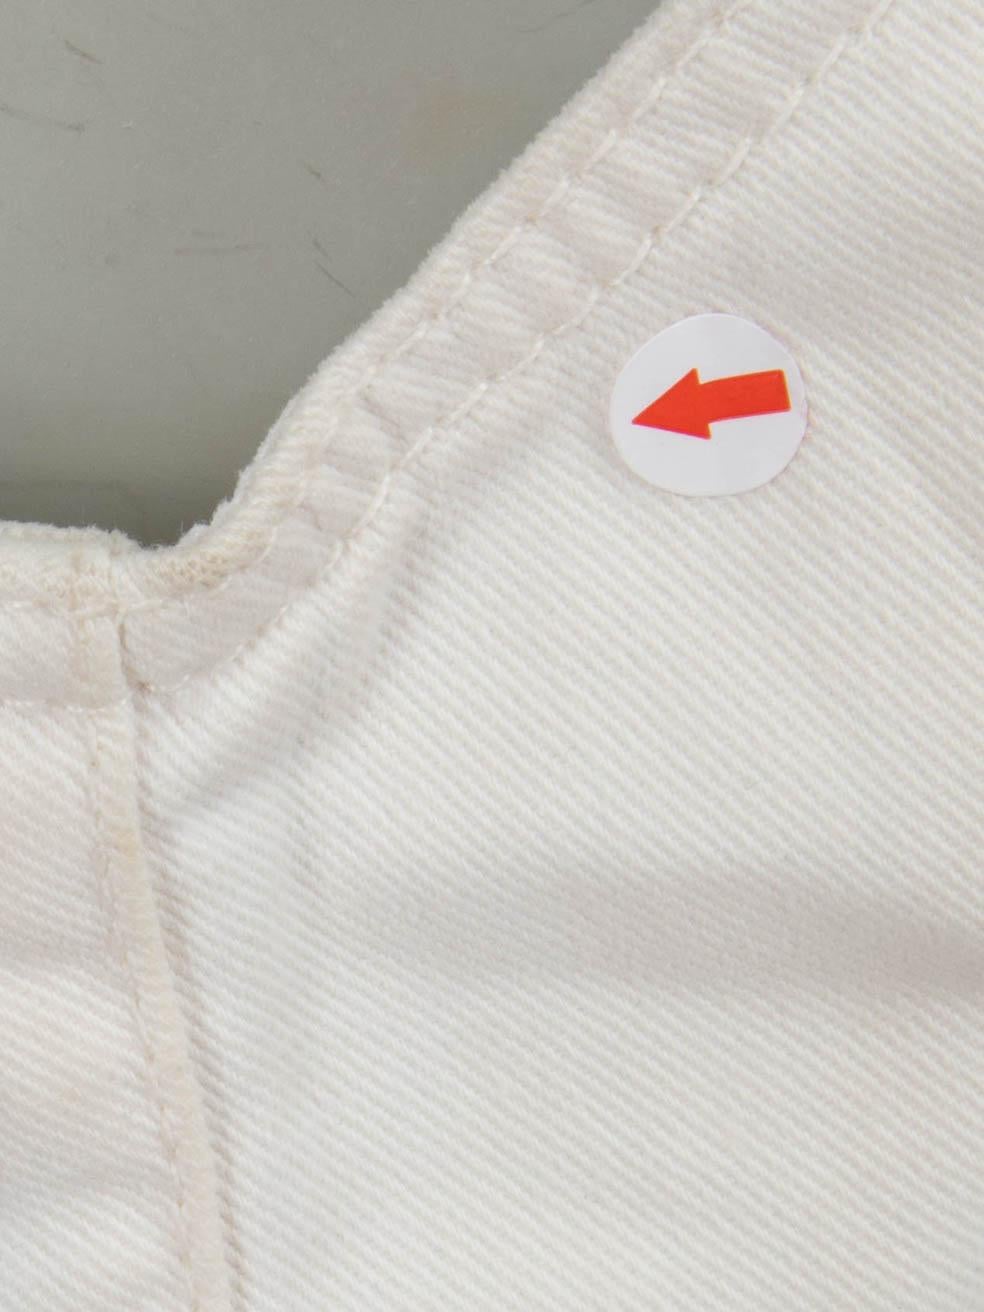 Women's Stella McCartney White Denim Cut Out Mini Dress Size M For Sale